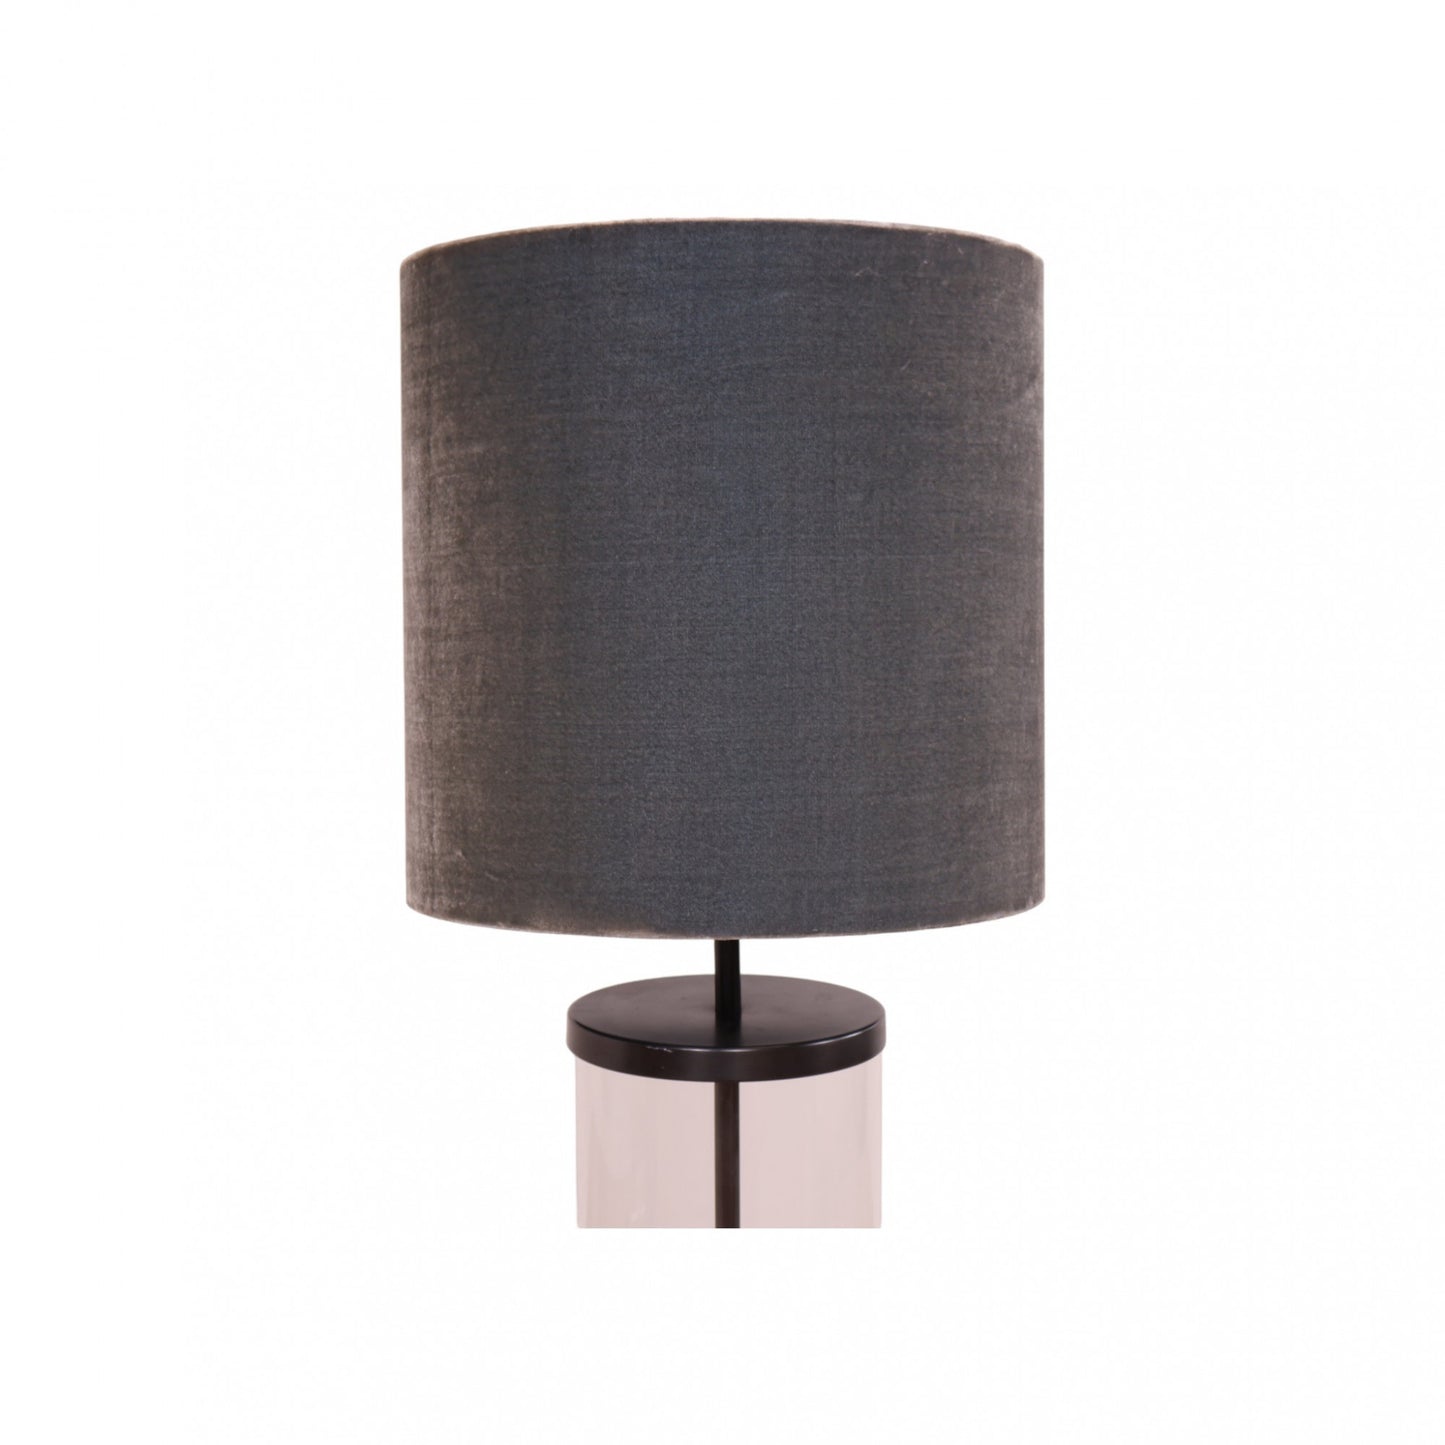 Stilig designet lampe med grå lampeskjerm